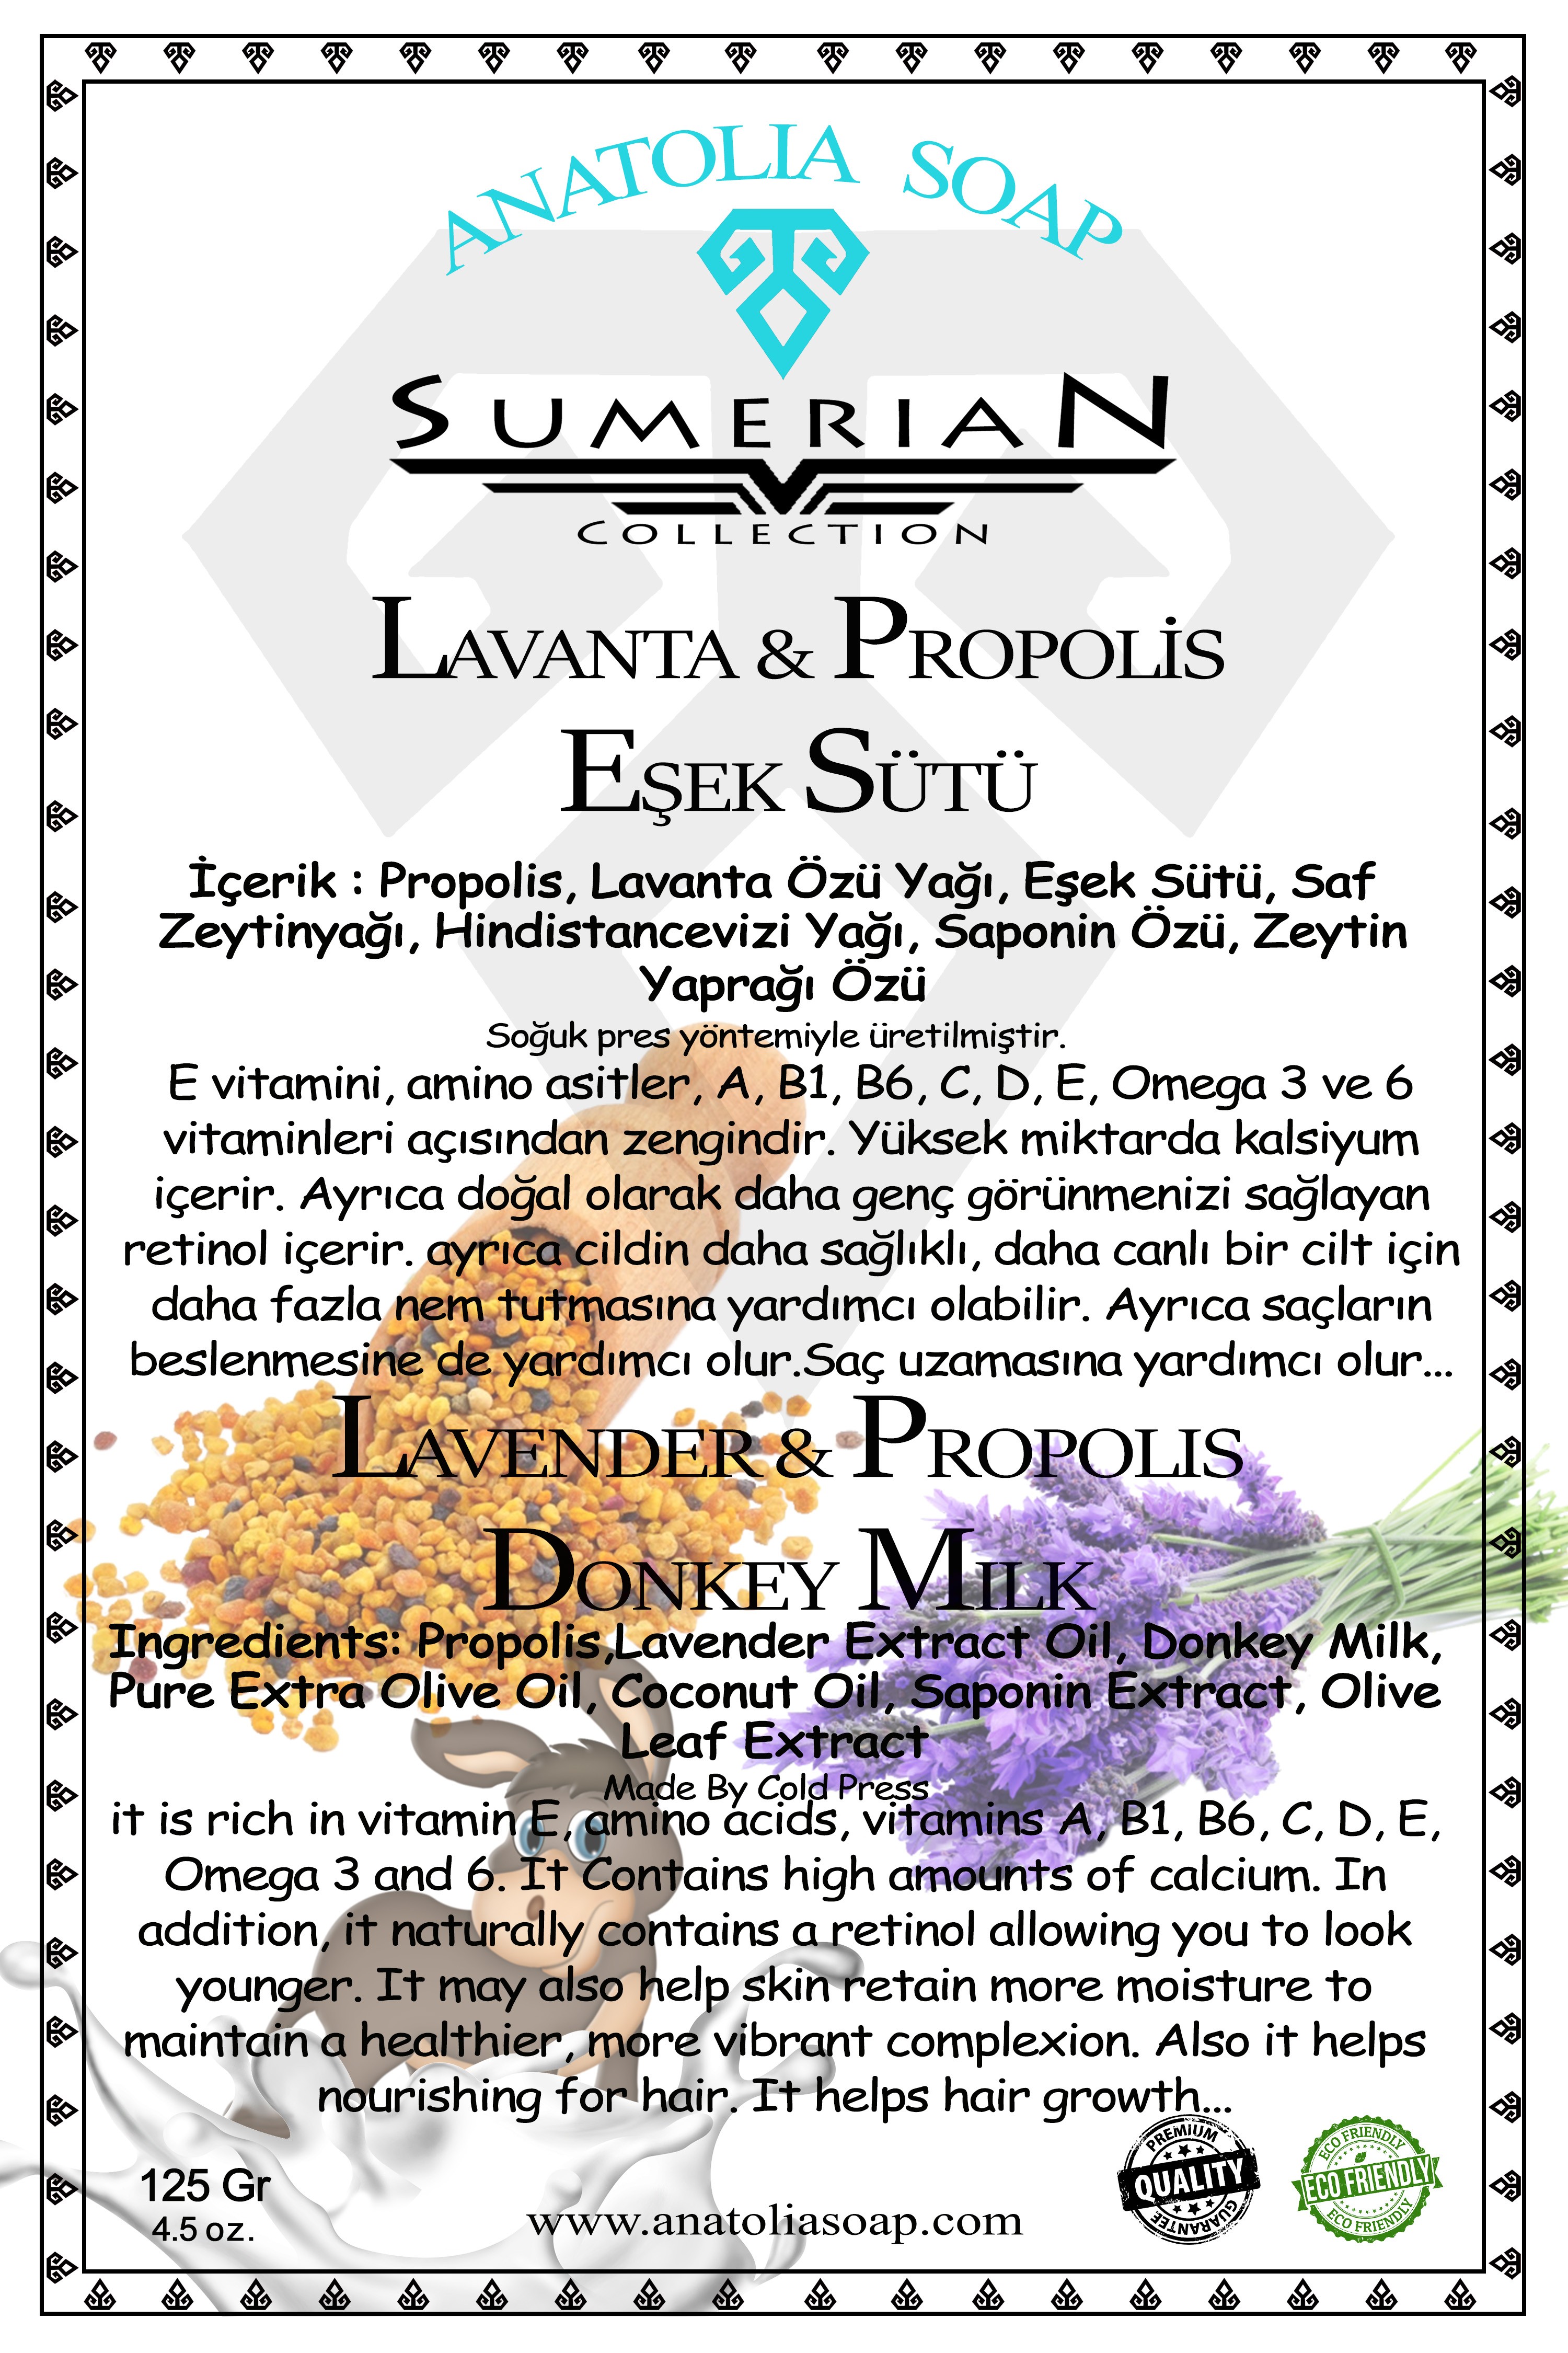 Sumerian Koleksiyonu Eşek Sütü Propolis Lavanta Sabunu ile Genç ve Prüzsüz Görünmeye Devam Edin.